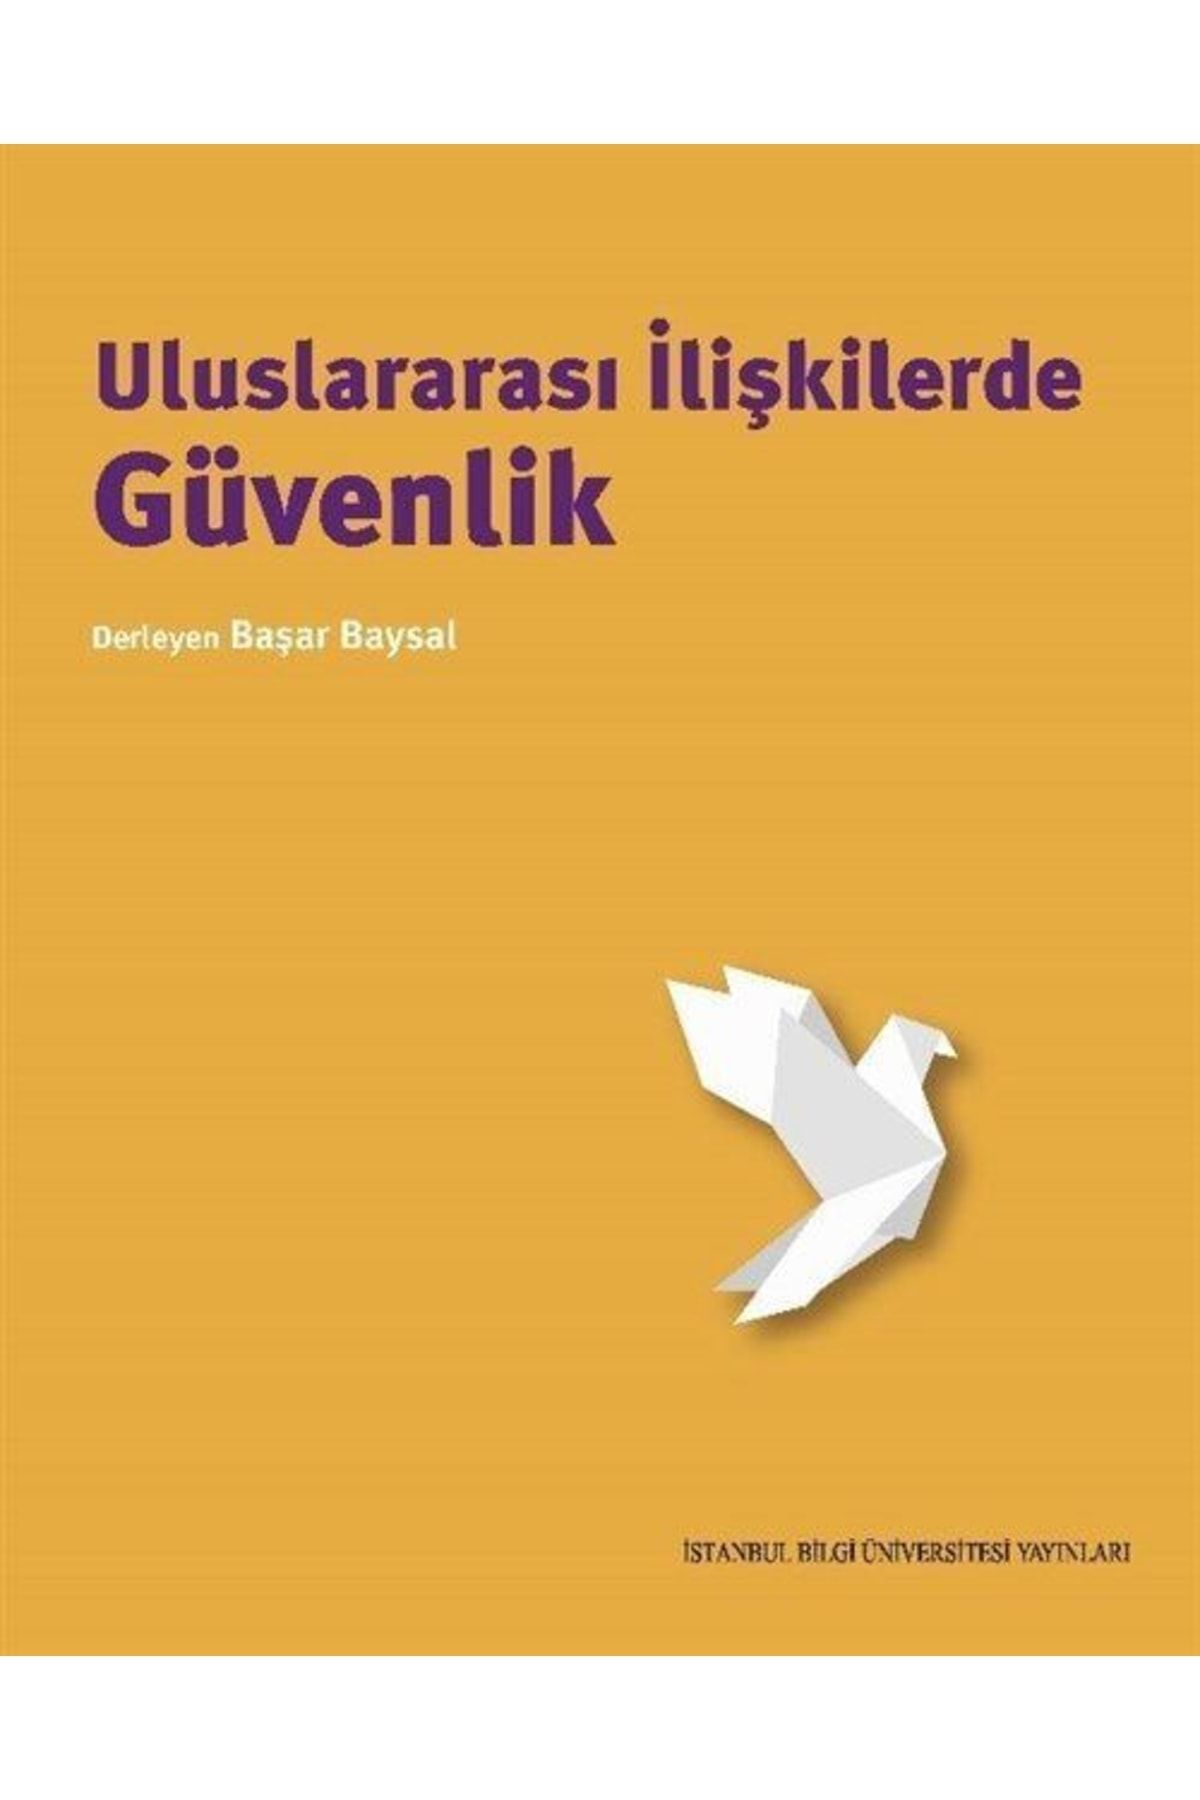 İstanbul Bilgi Üniversitesi Yayınları Uluslararası Ilişkilerde Güvenlik